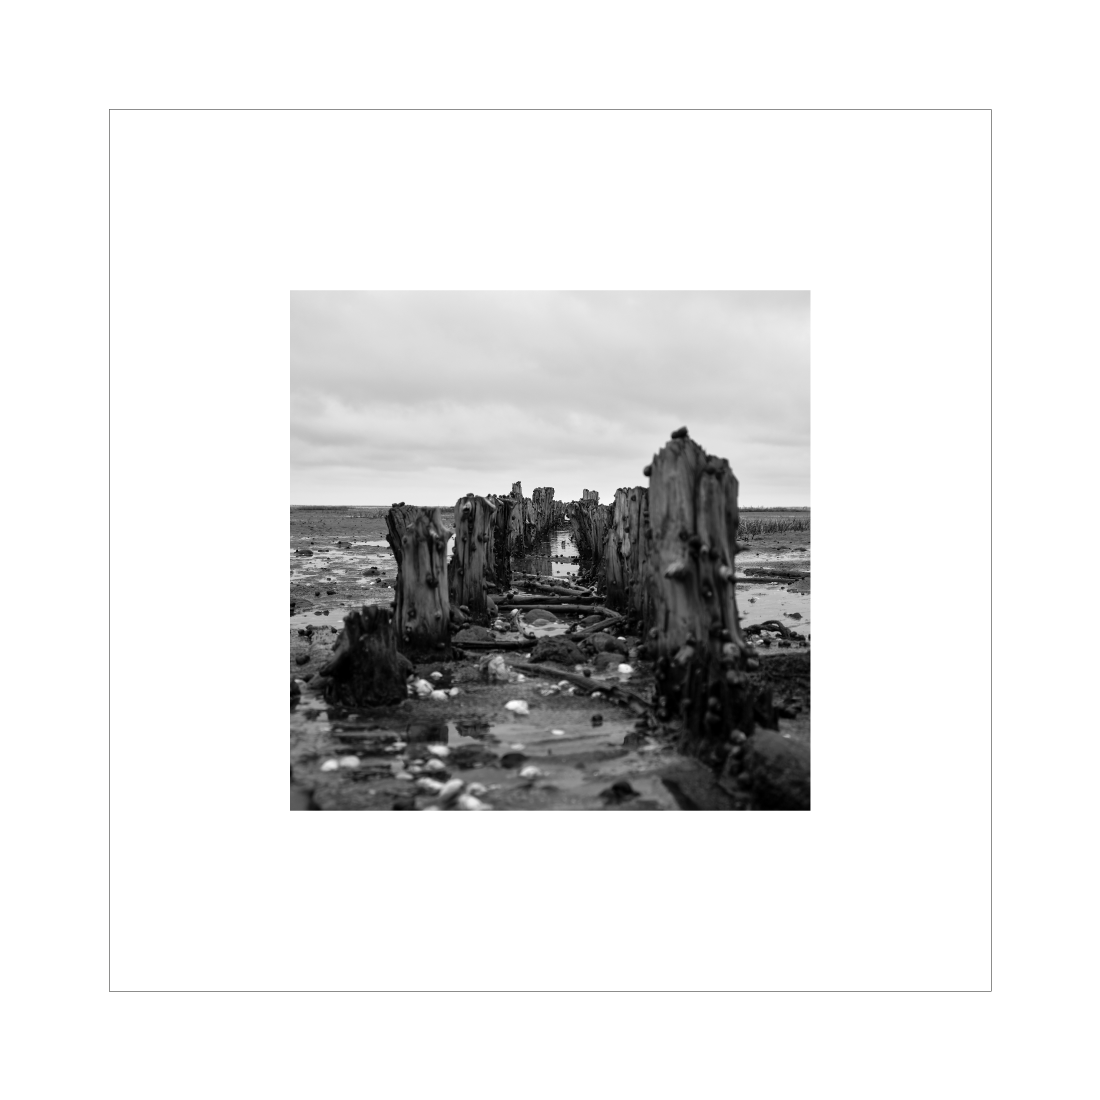 Kvadratisk billede med sort-hvid fotokunst fra bunden af vadehavet